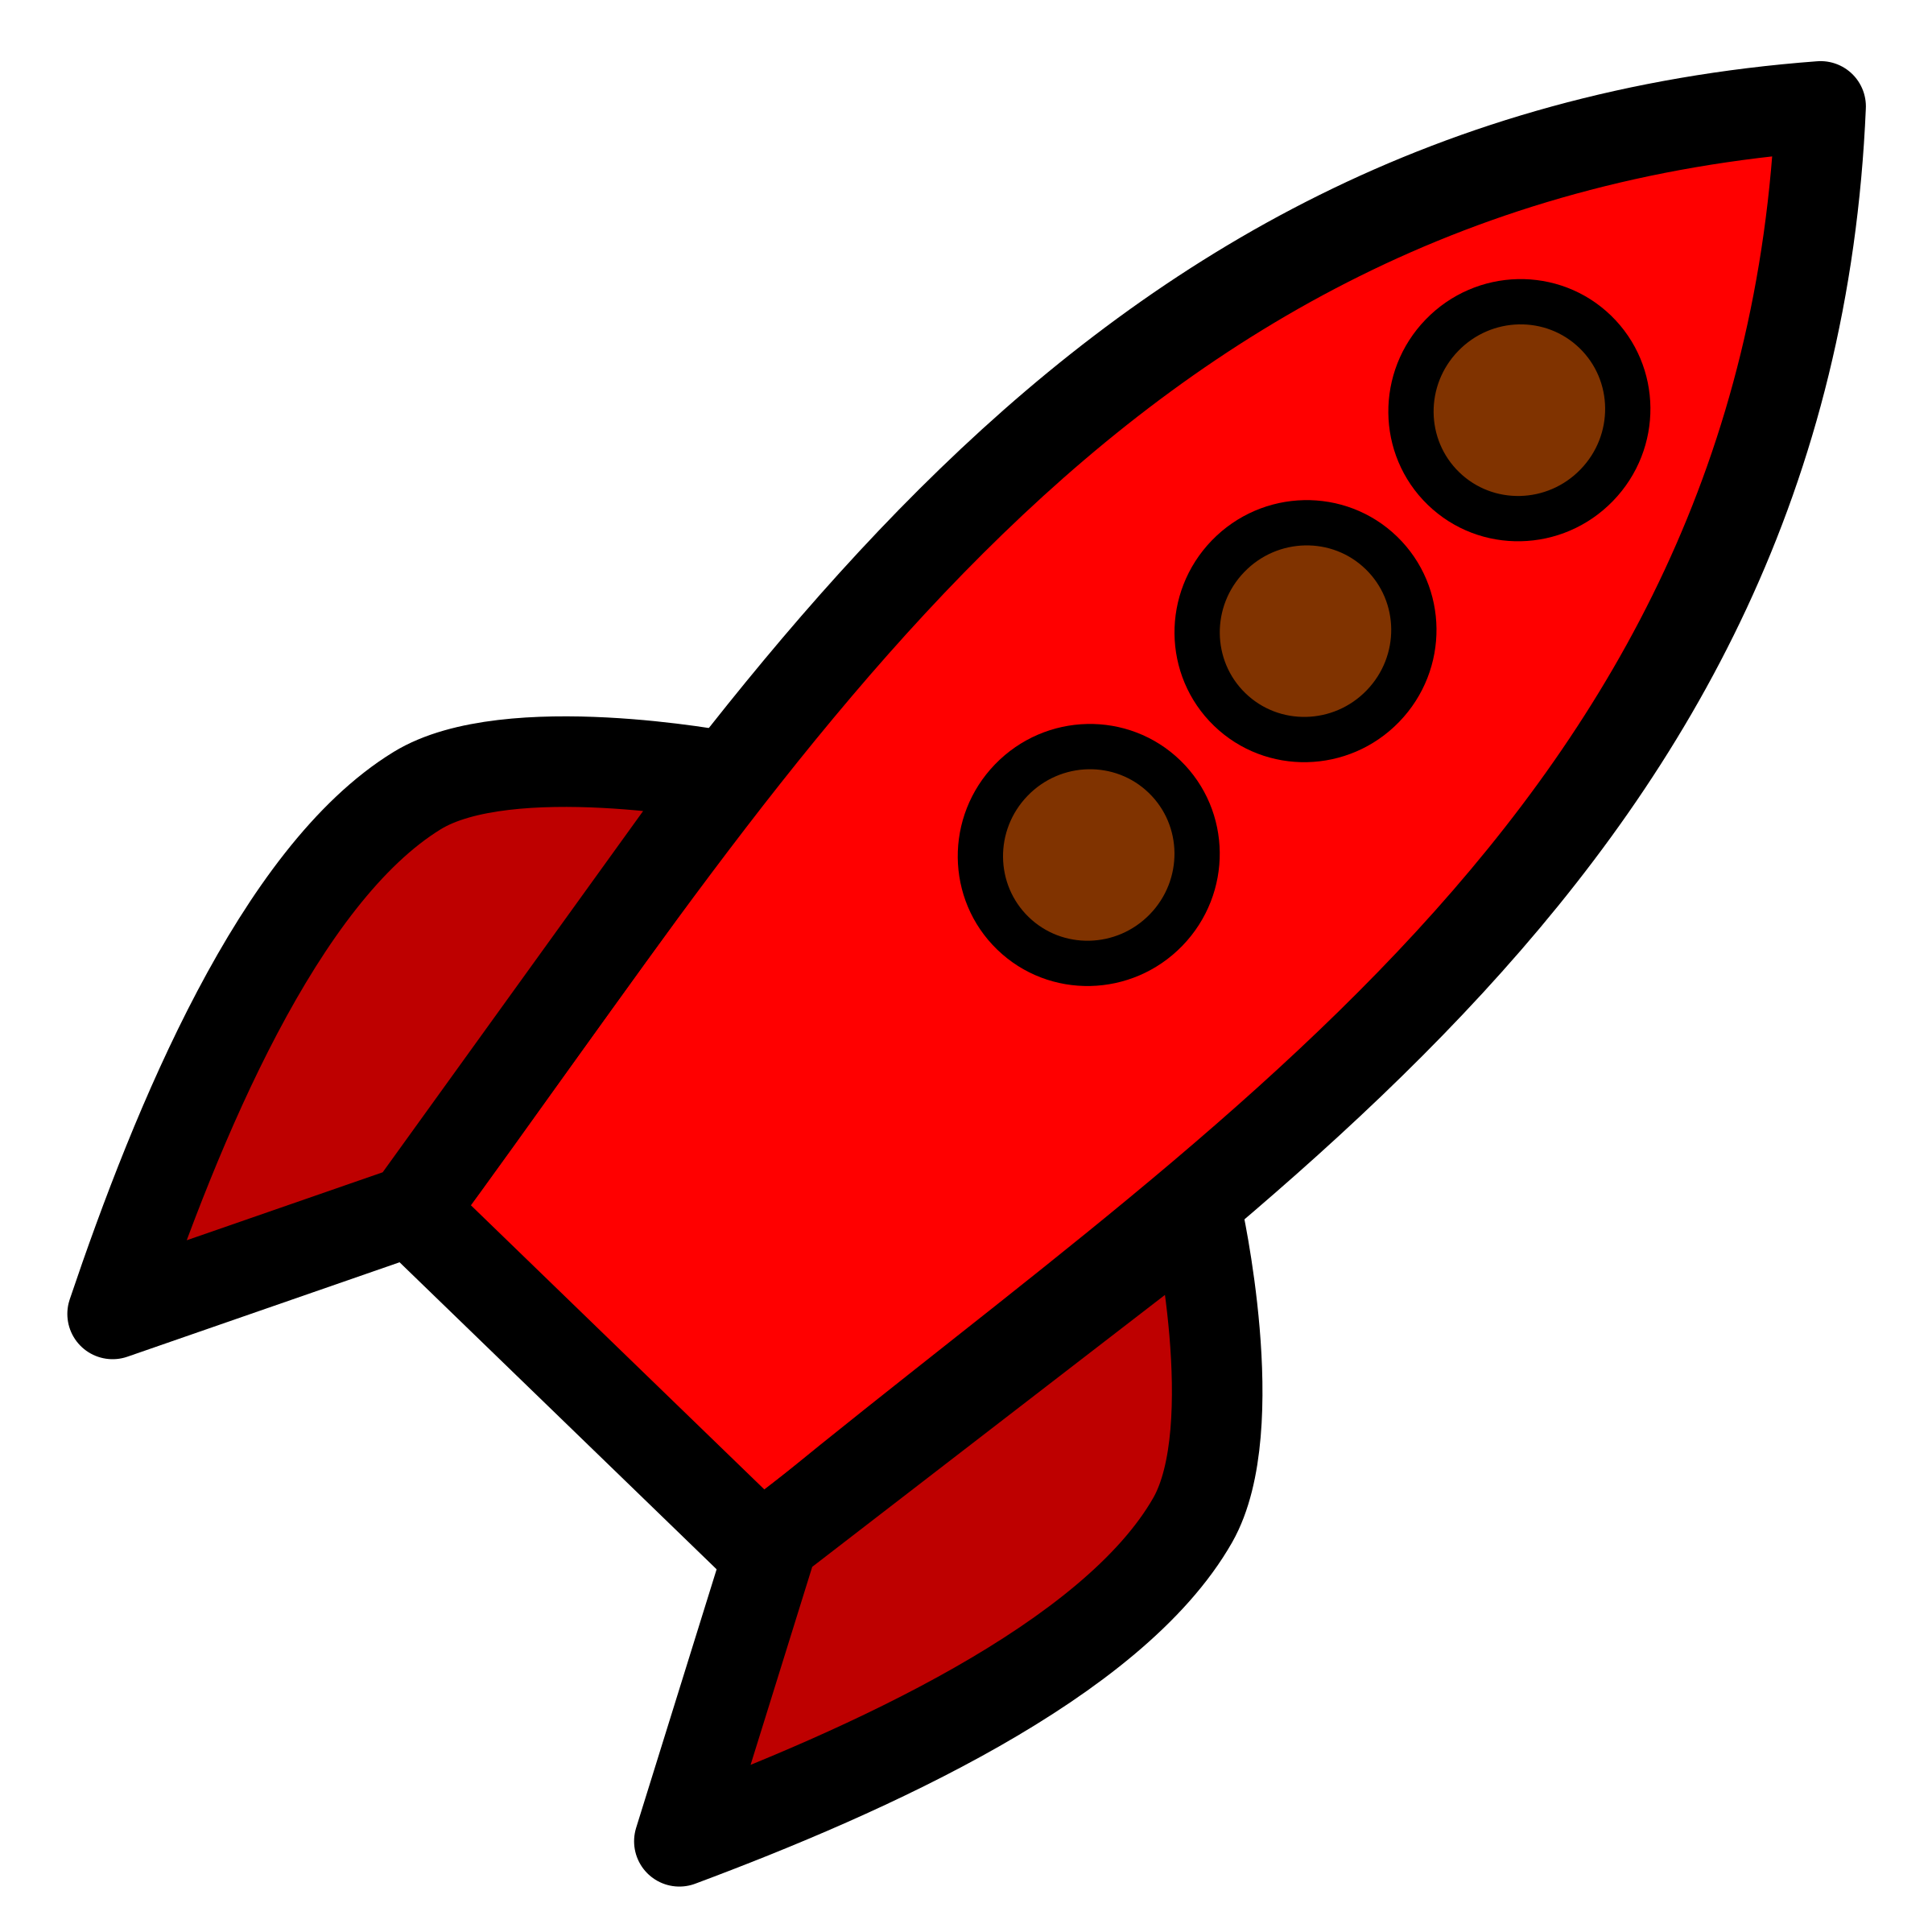 Clipart rocket red rocket, Clipart rocket red rocket